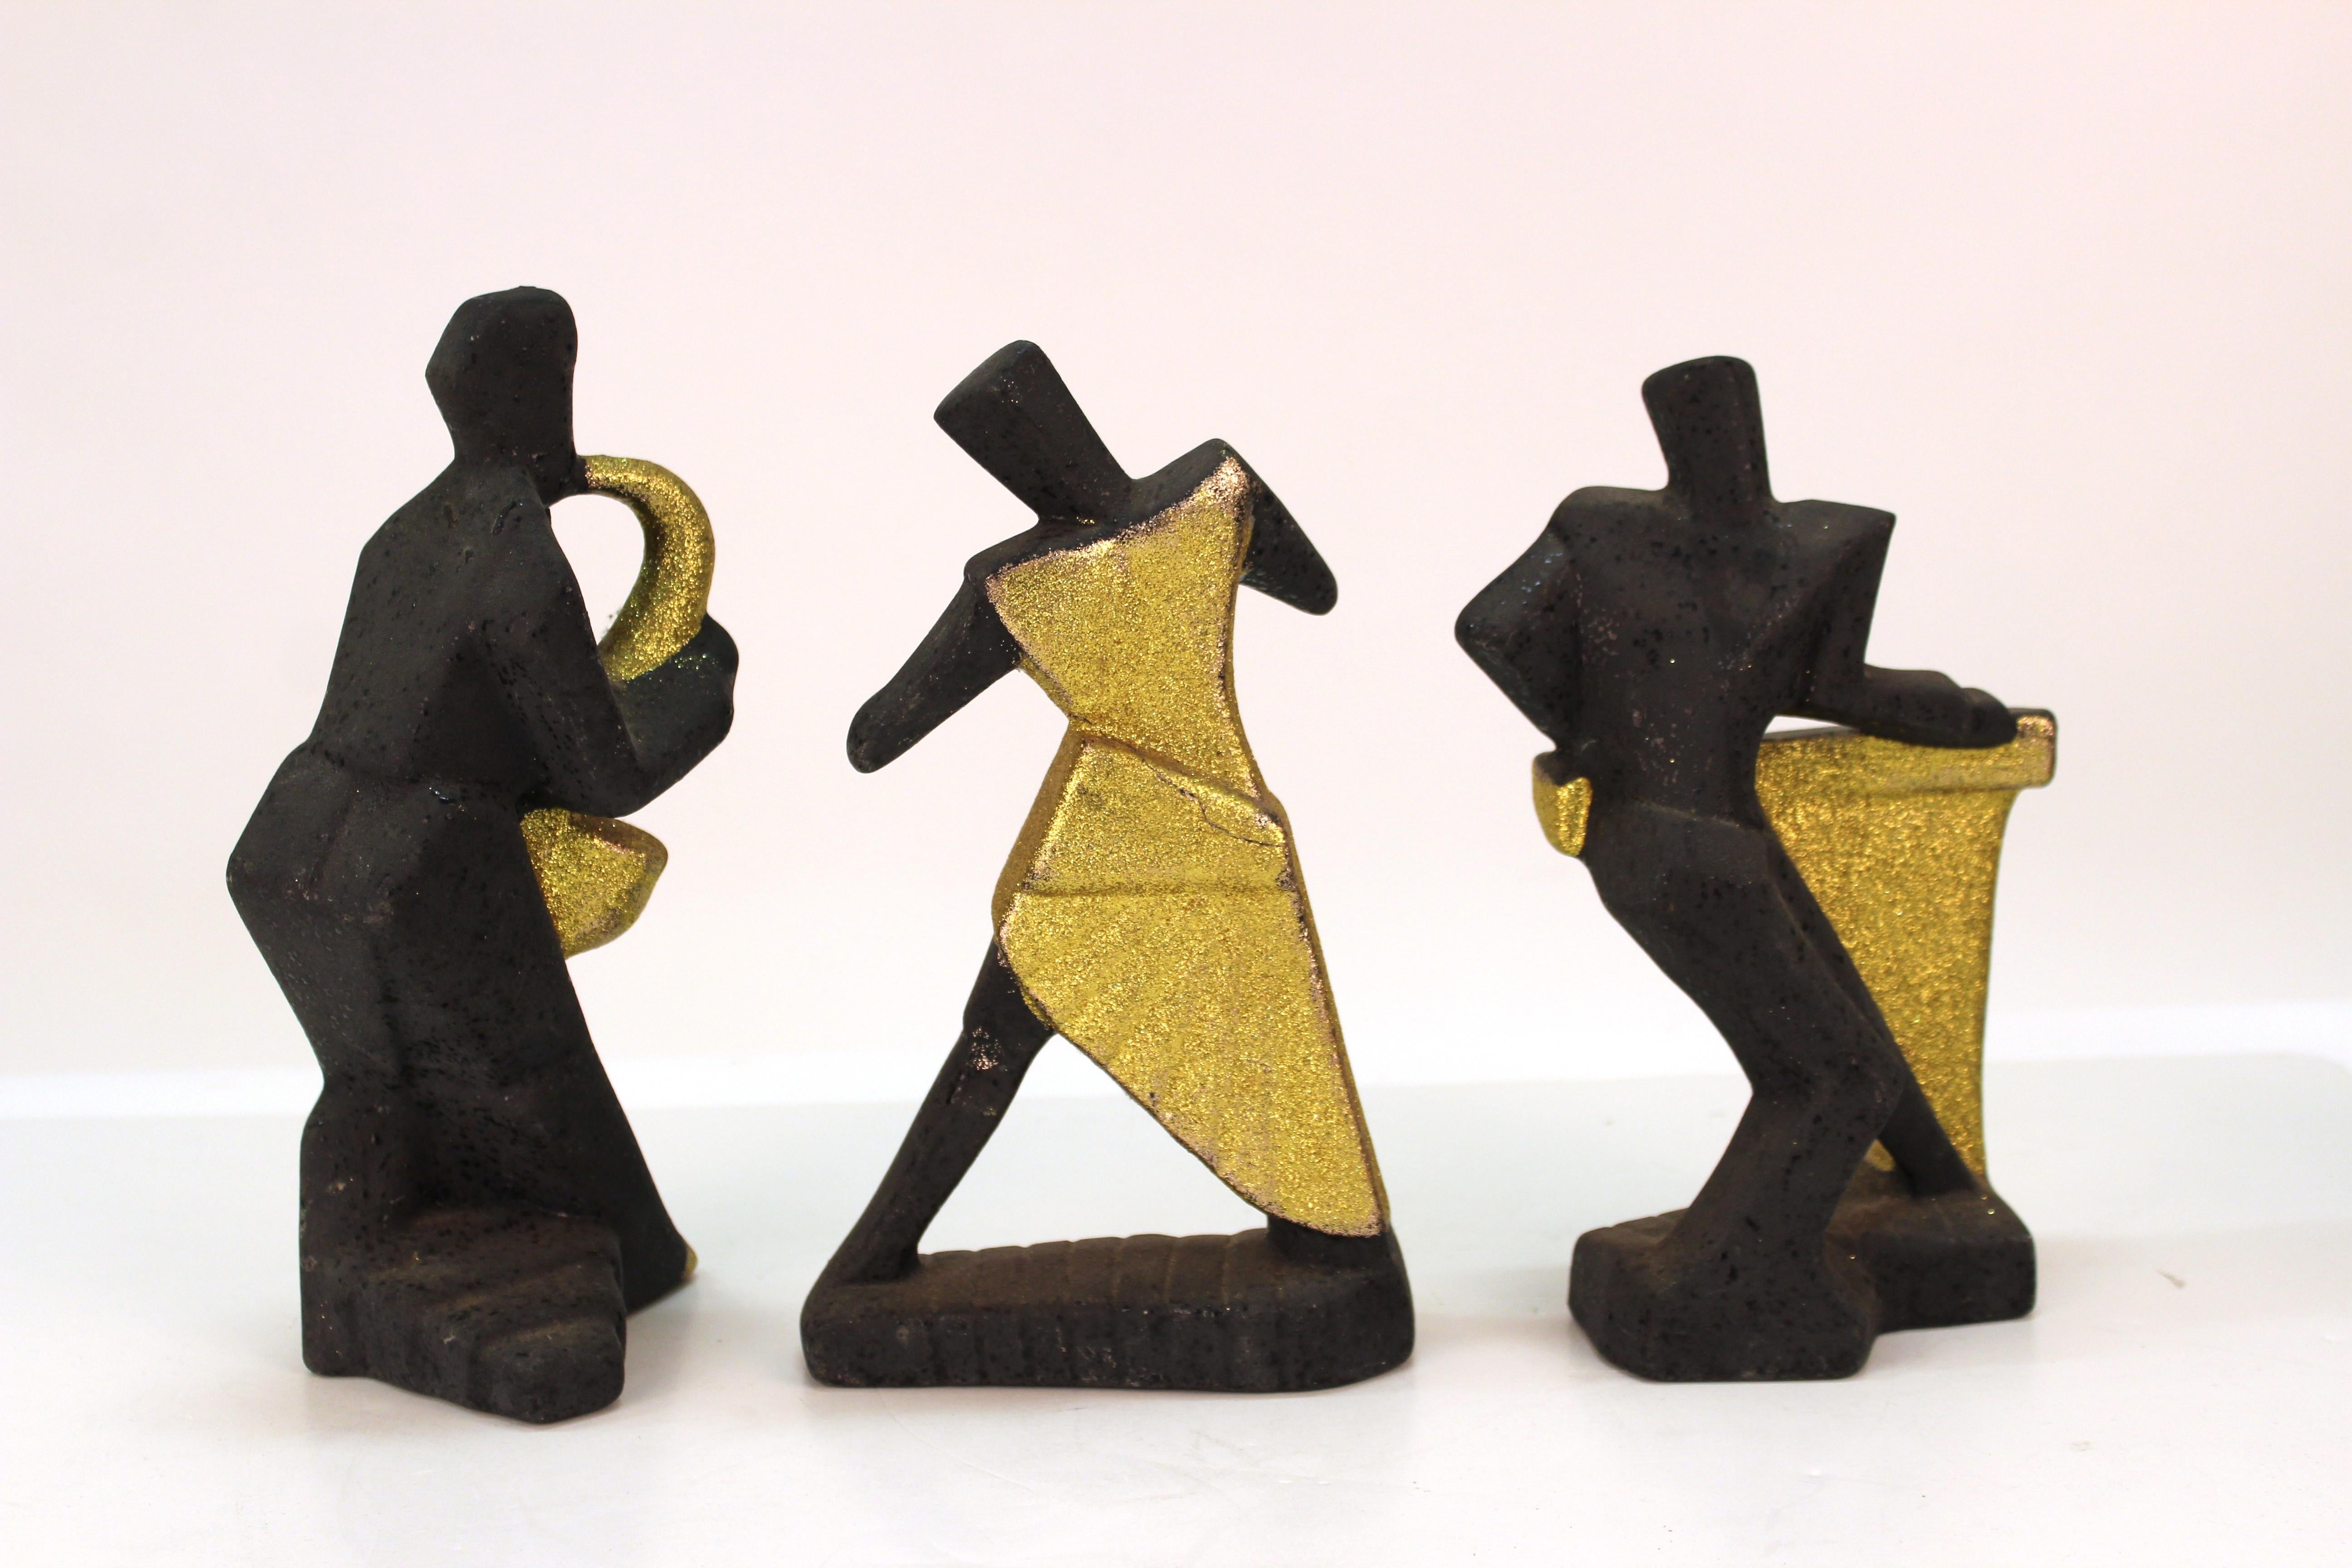 Post-Modern Cubist Style Postmodern Ceramic Jazz Sculptures